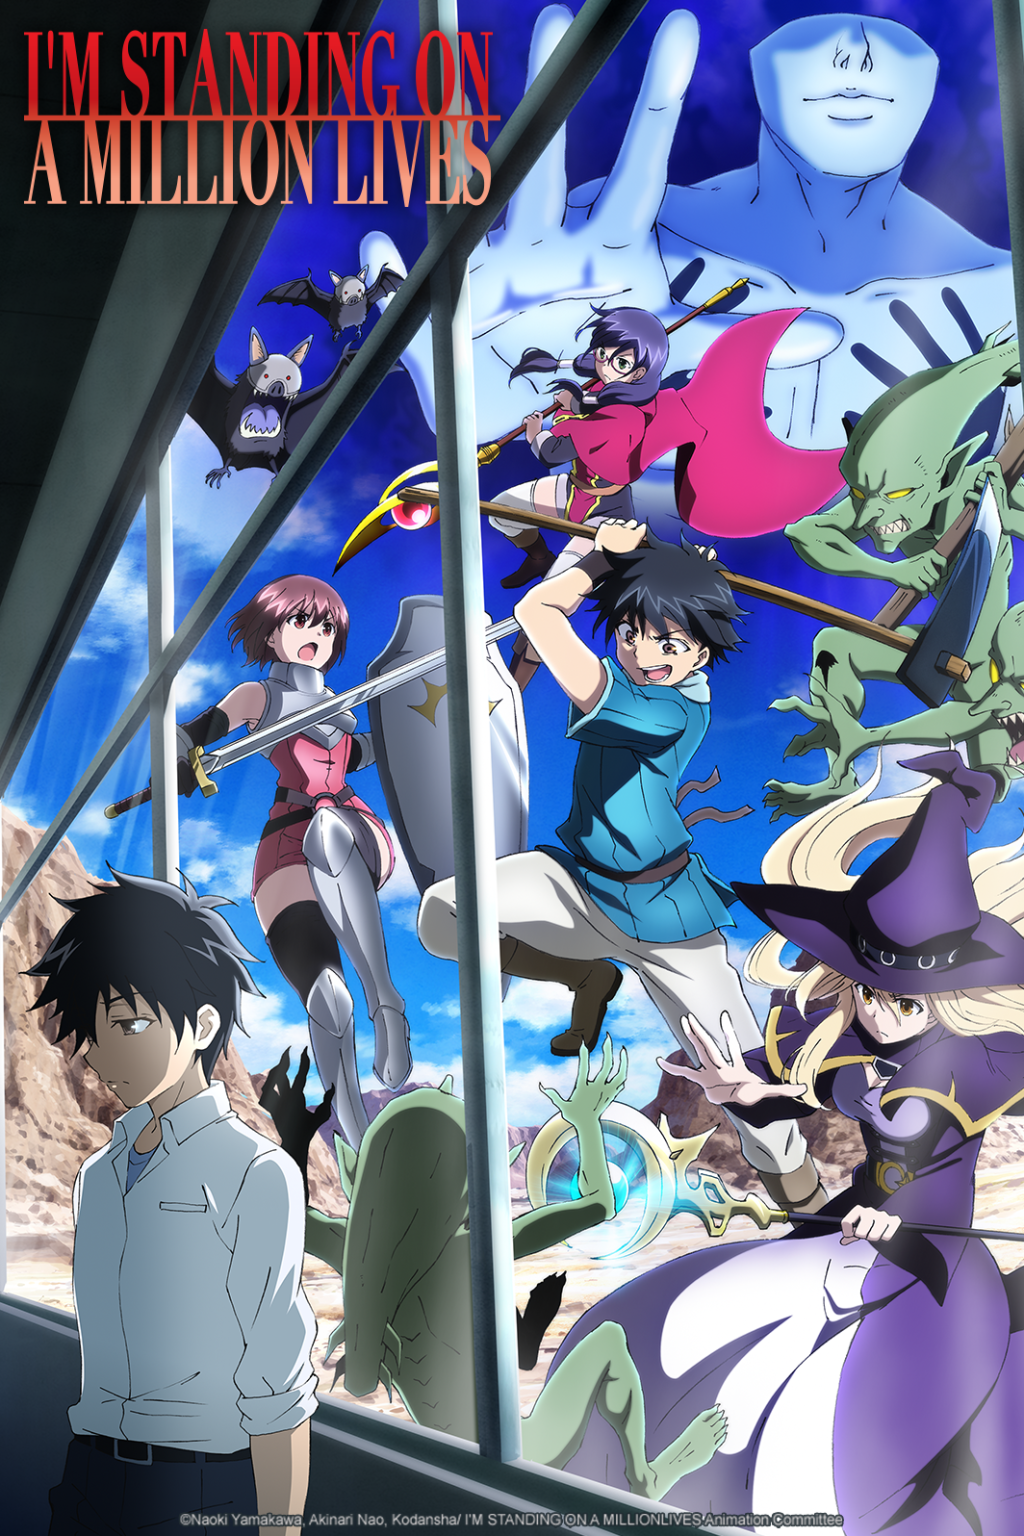 Noblesse Anime to Stream October 2020 on Crunchyroll